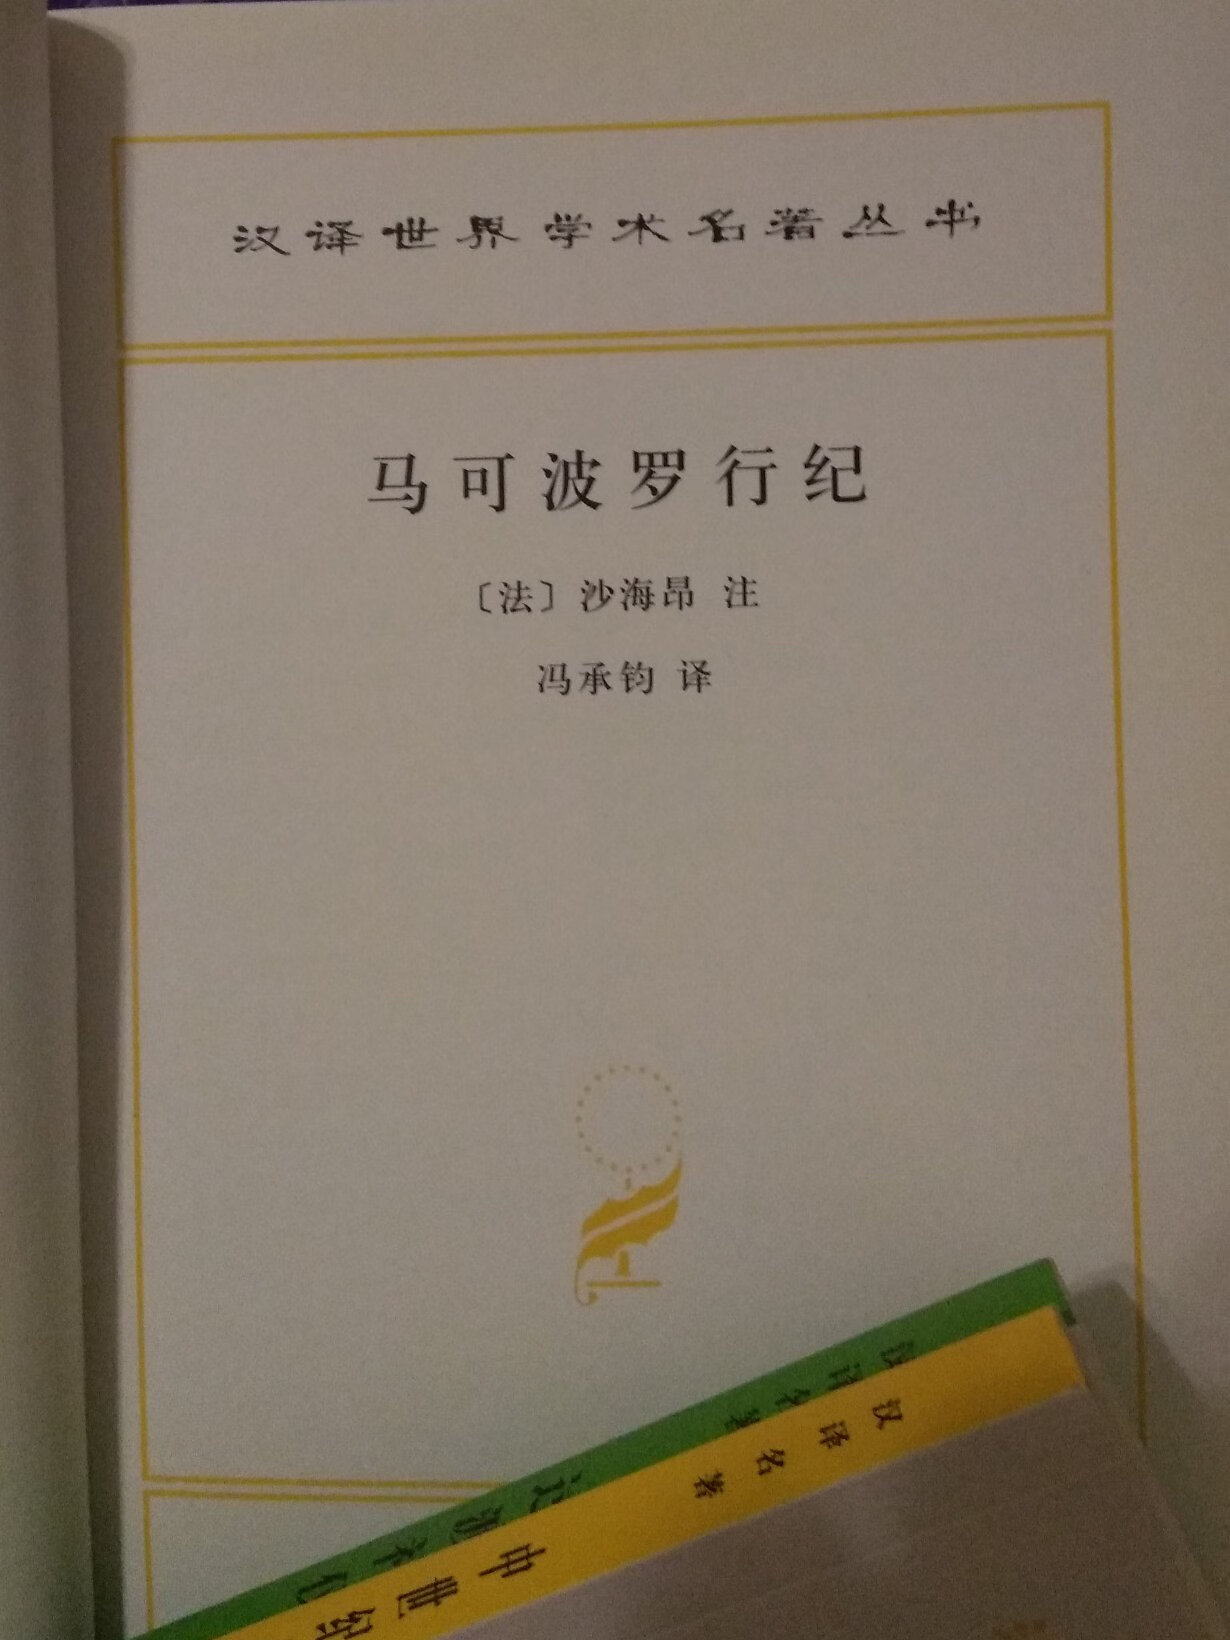 这本书深刻地影响了世界历史进程。冯先生译作，百年经典。